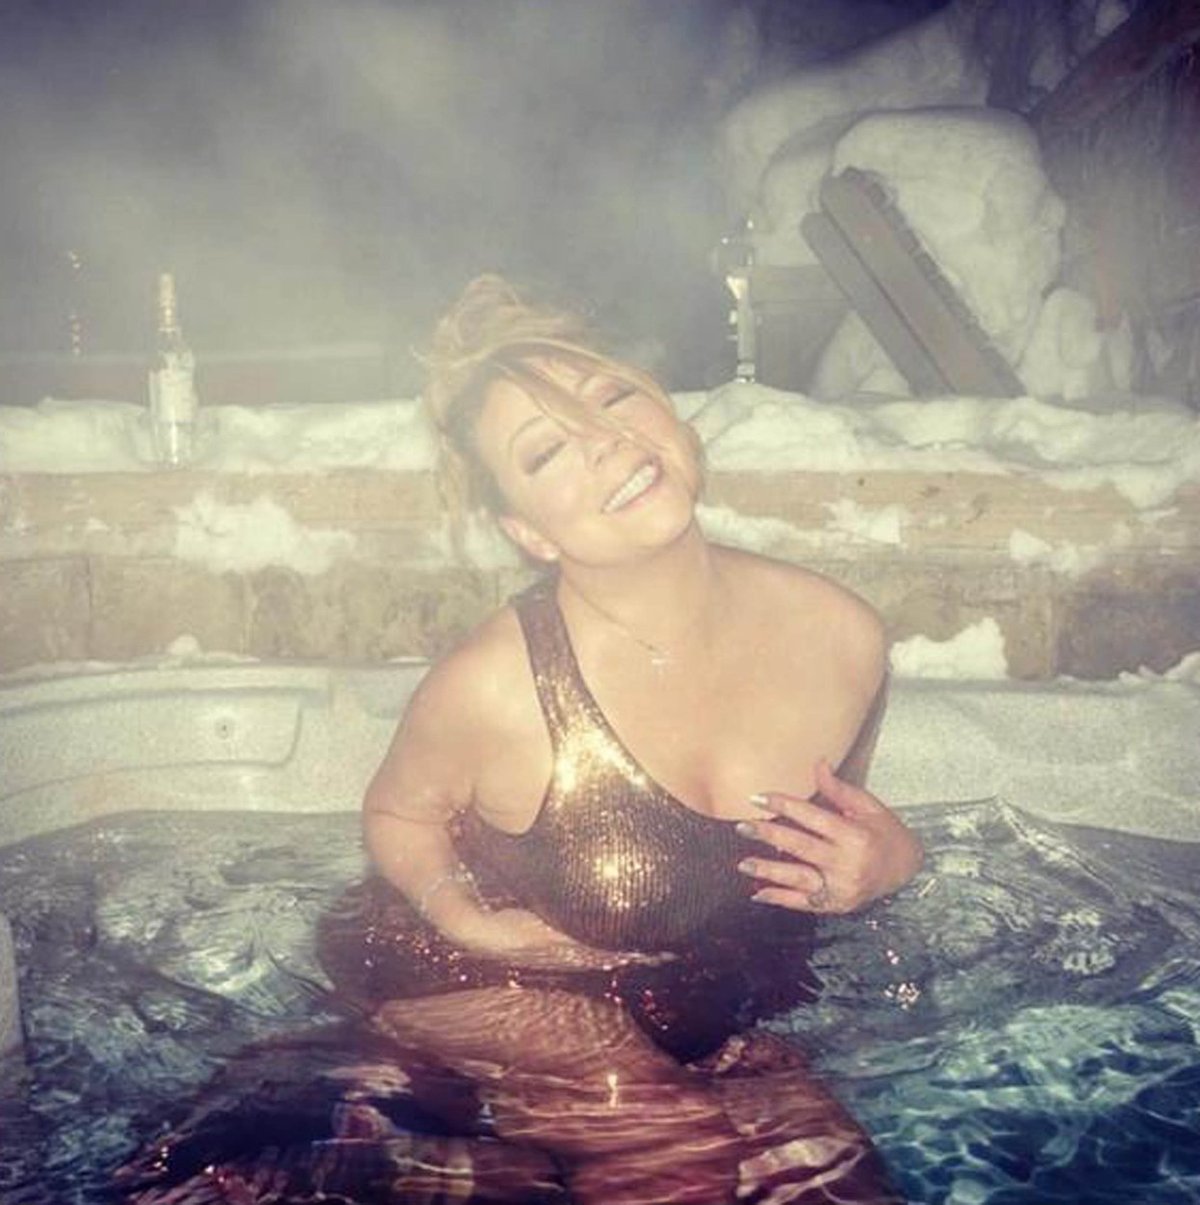 Po konci svátků královna Vánoc Mariah Carey usedne do vířivky a užívá si samu sebe.